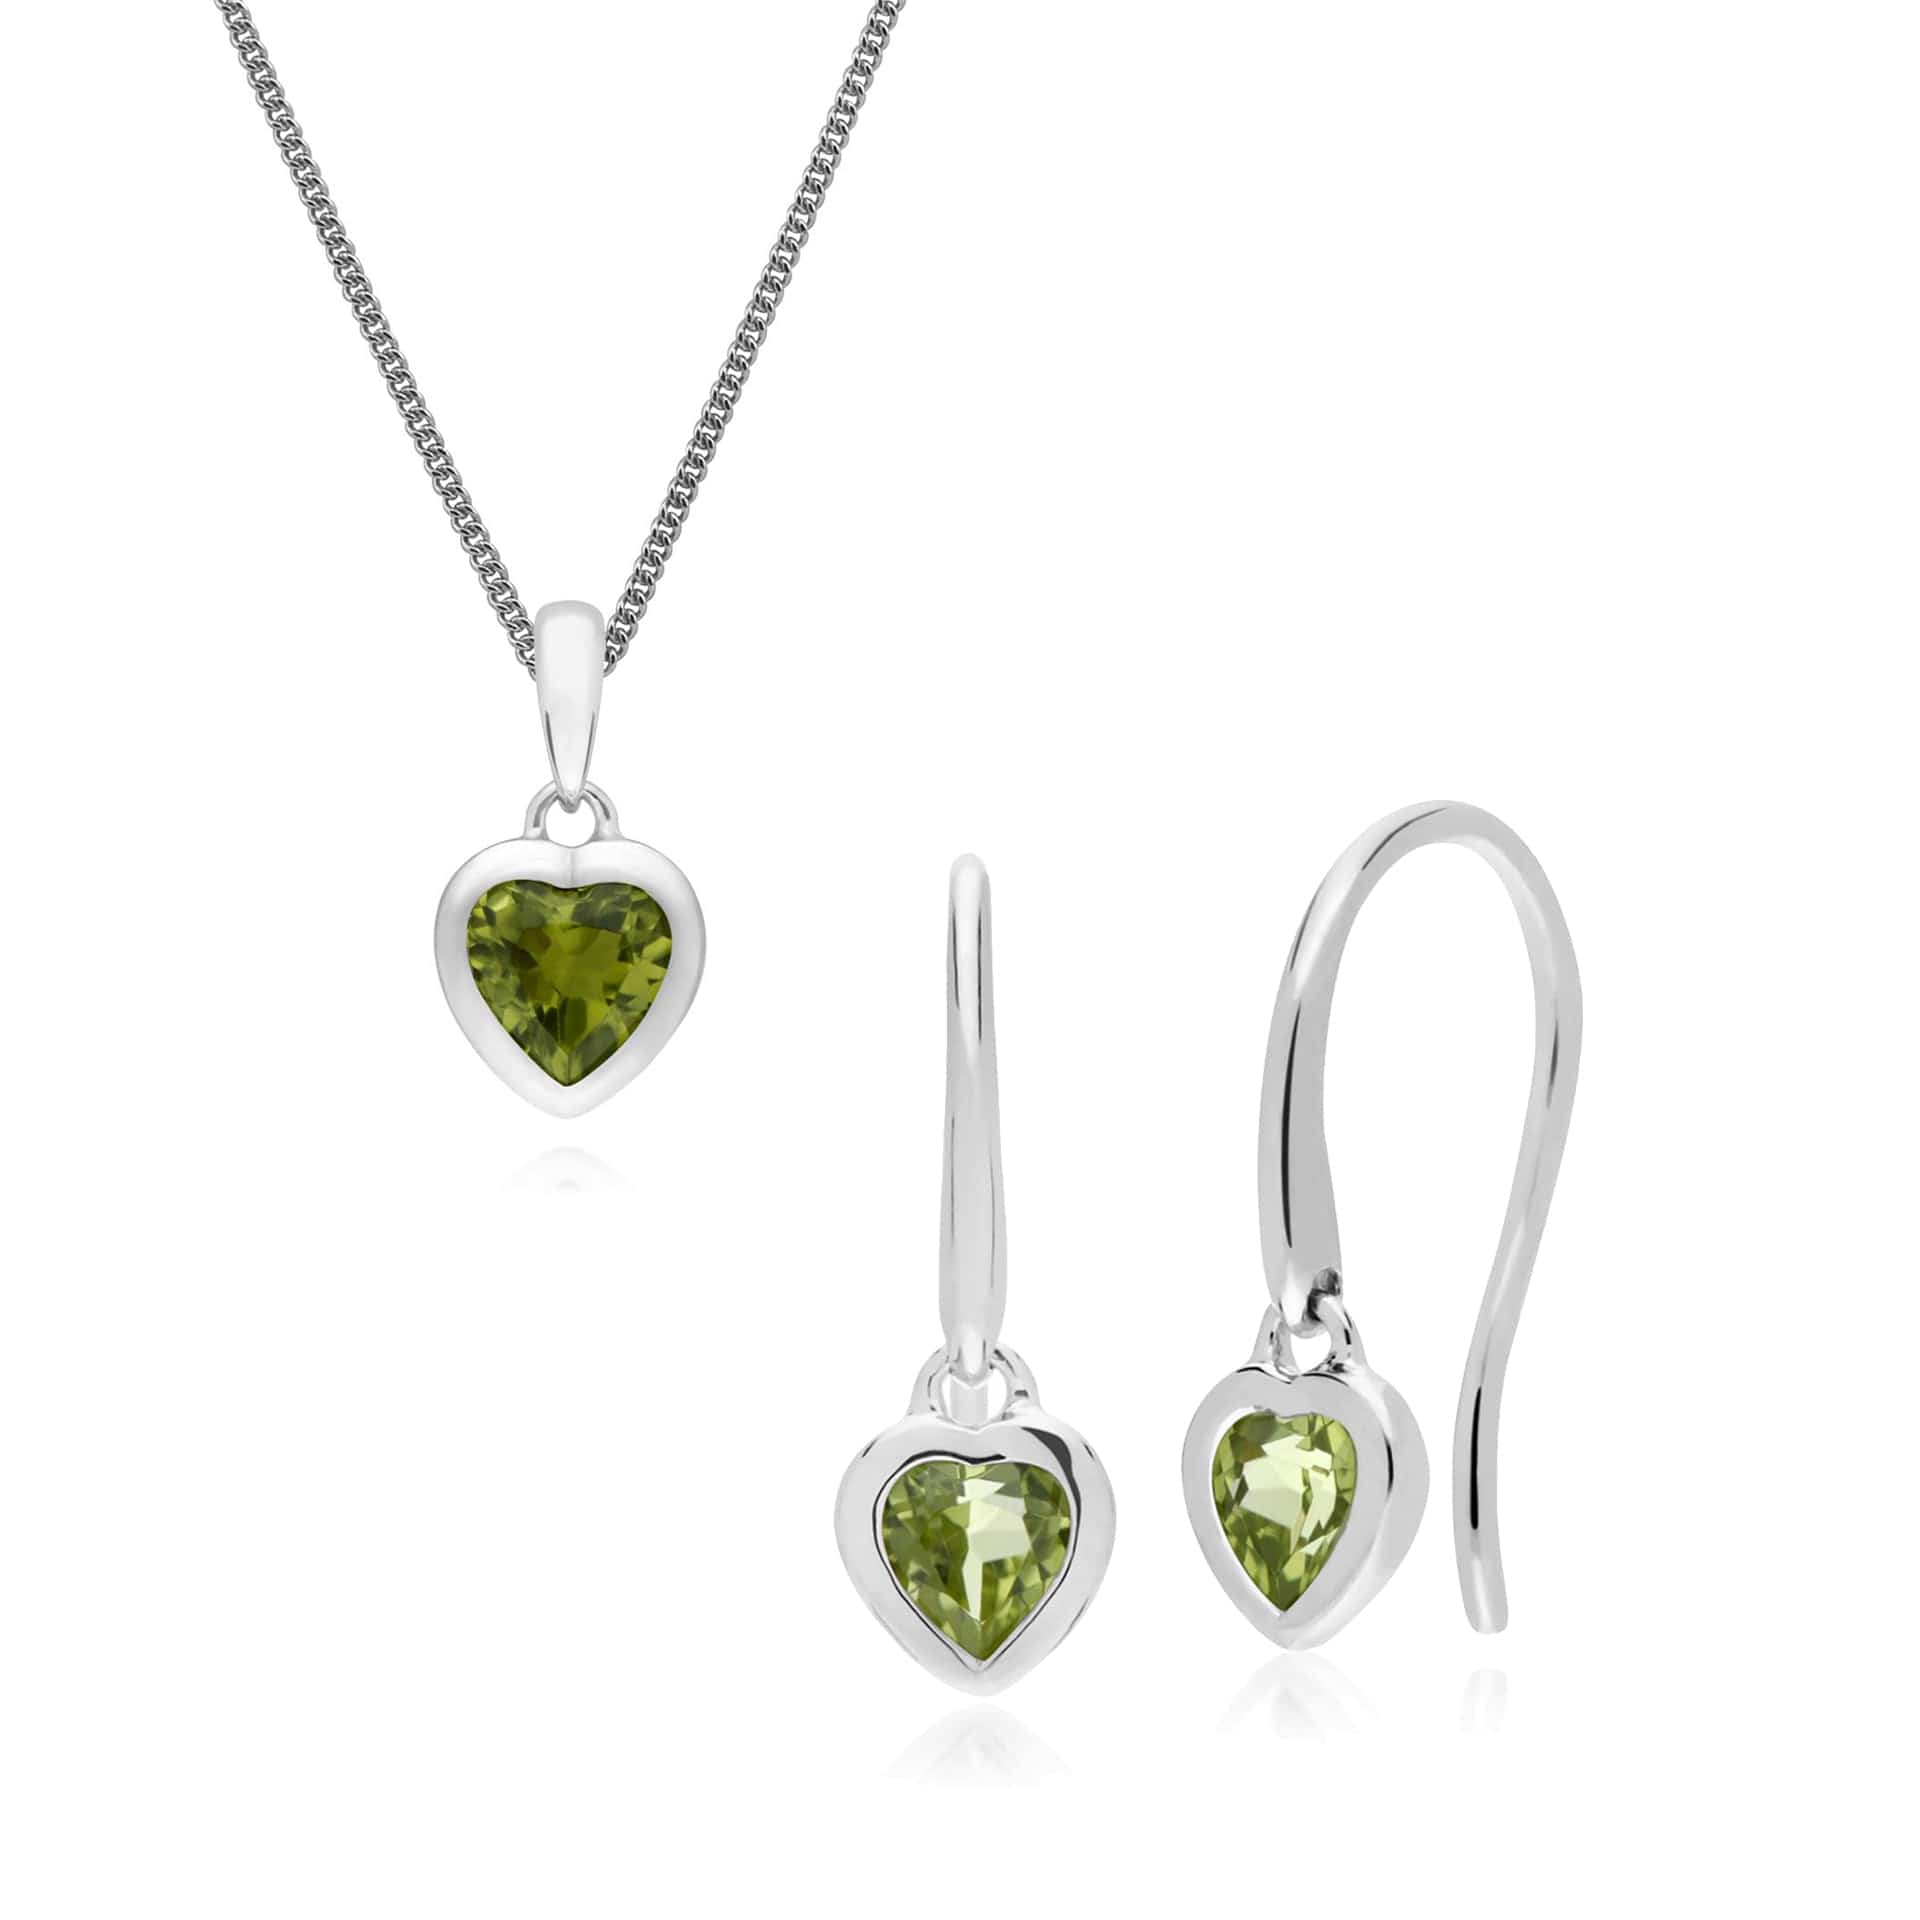 270E026204925-270P028704925 Classic Heart Peridot Drop Earrings & Pendant Set in 925 Sterling Silver 1